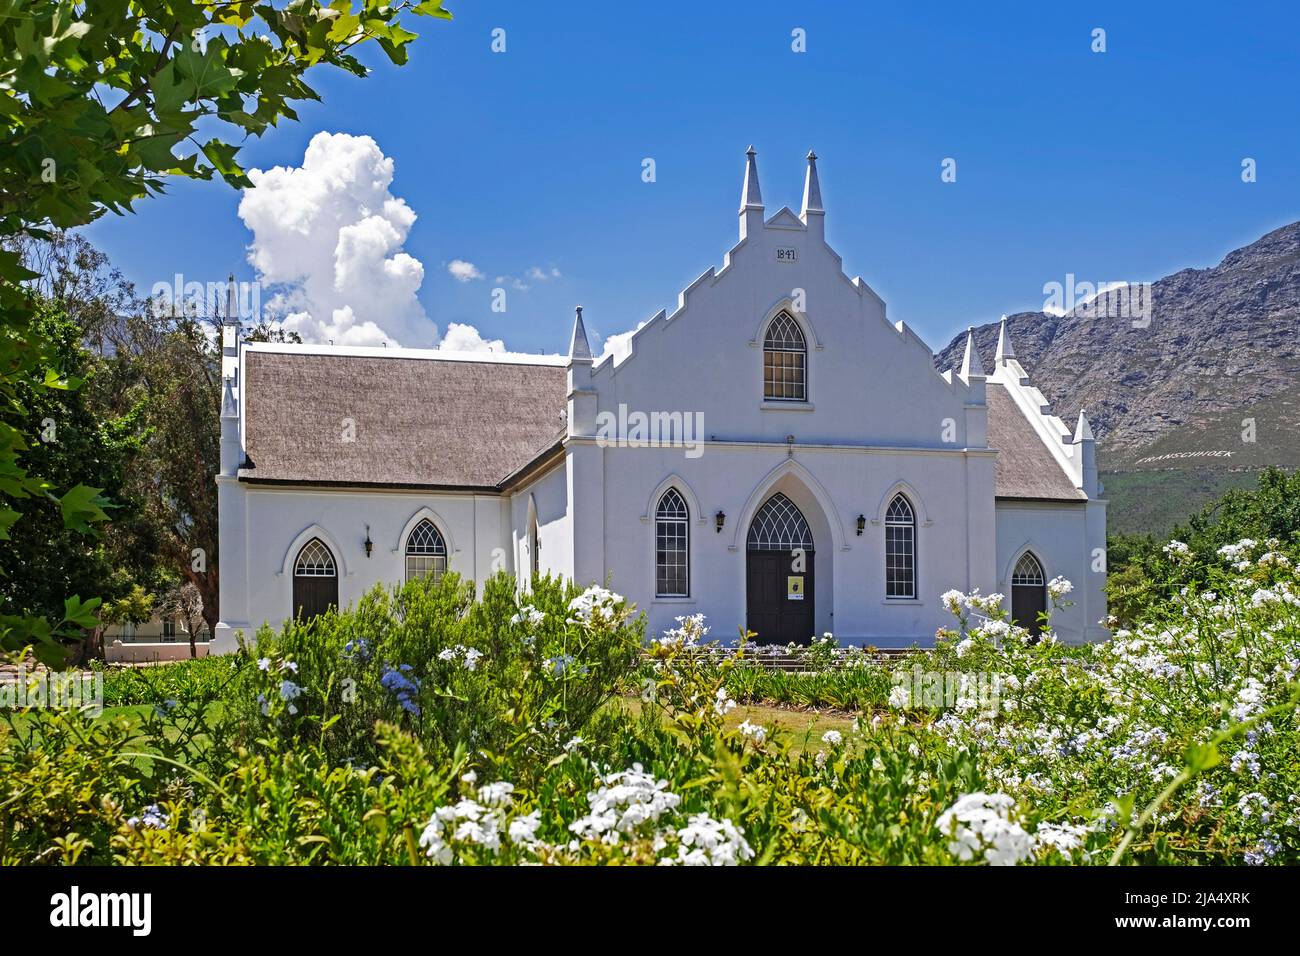 Église réformée néerlandaise de style Cape Dutch à Franschhoek, Stellenbosch, Cape Winelands, province du Cap occidental, Afrique du Sud Banque D'Images